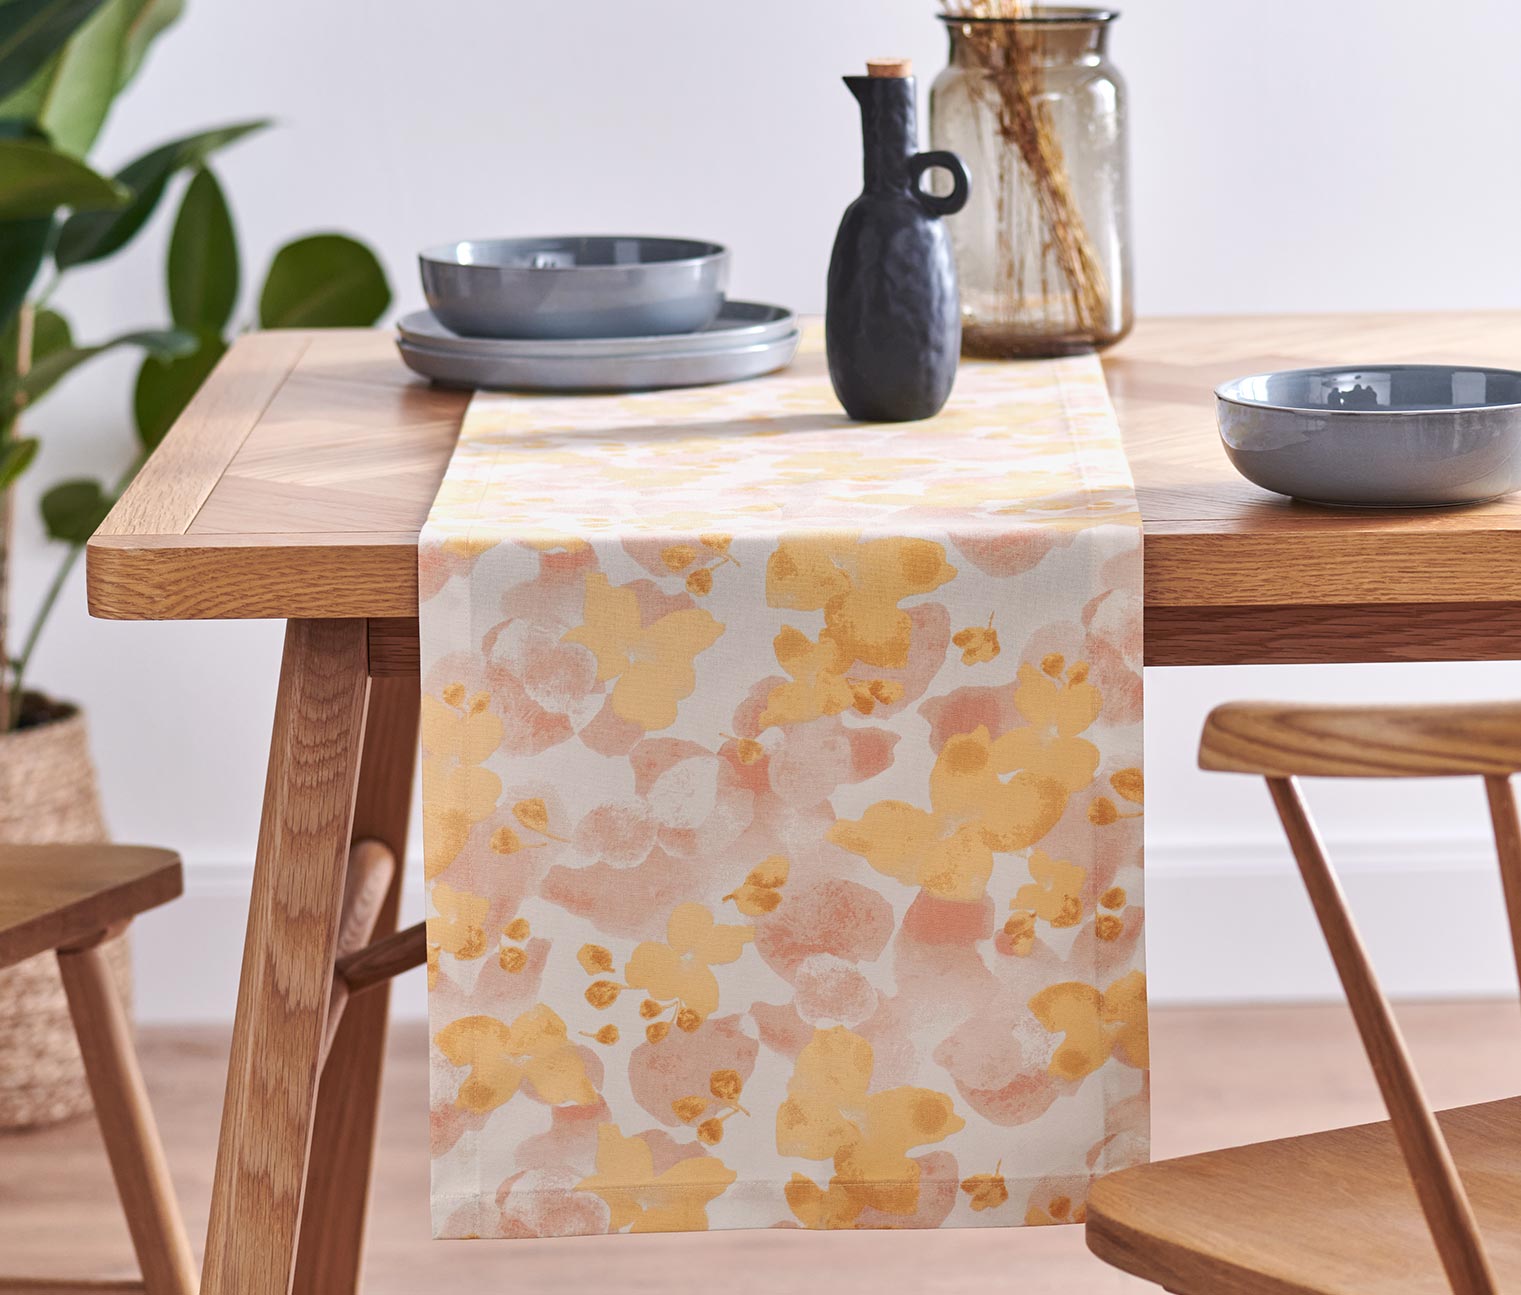 Asztali futó, virágos, sárga/rózsaszín, 40x180 cm 661001 a Tchibo-nál.